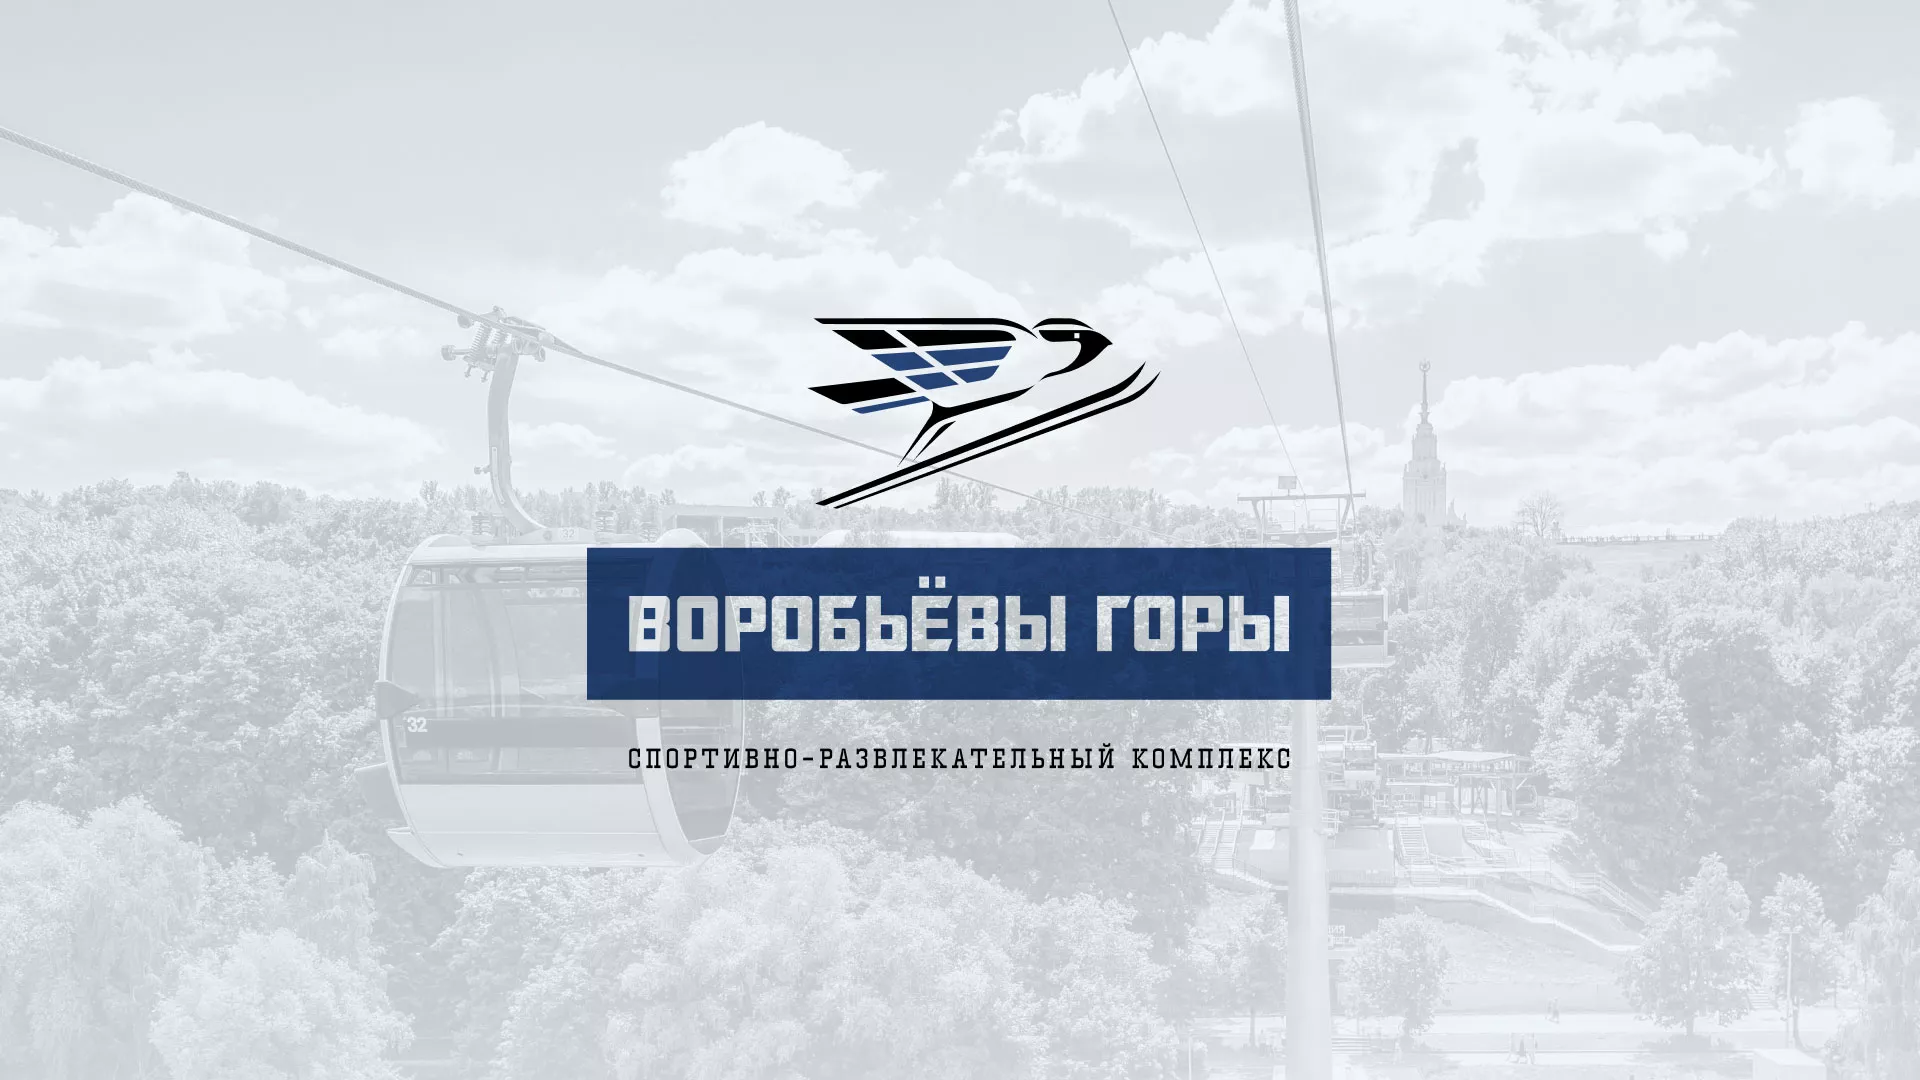 Разработка сайта в Перми для спортивно-развлекательного комплекса «Воробьёвы горы»